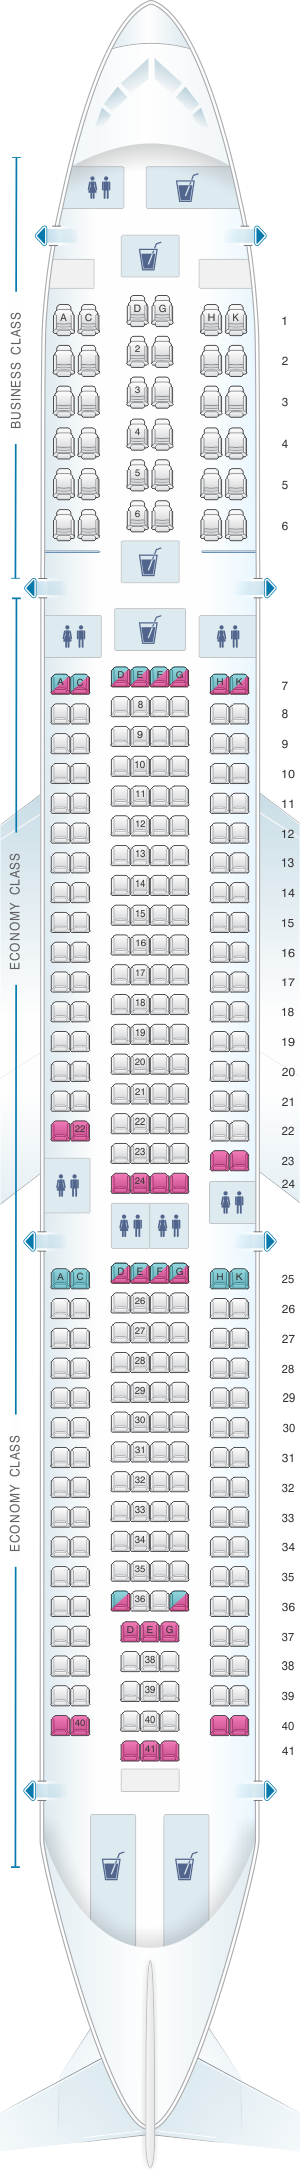 Seat Map Egyptair Airbus A330 300 | SeatMaestro